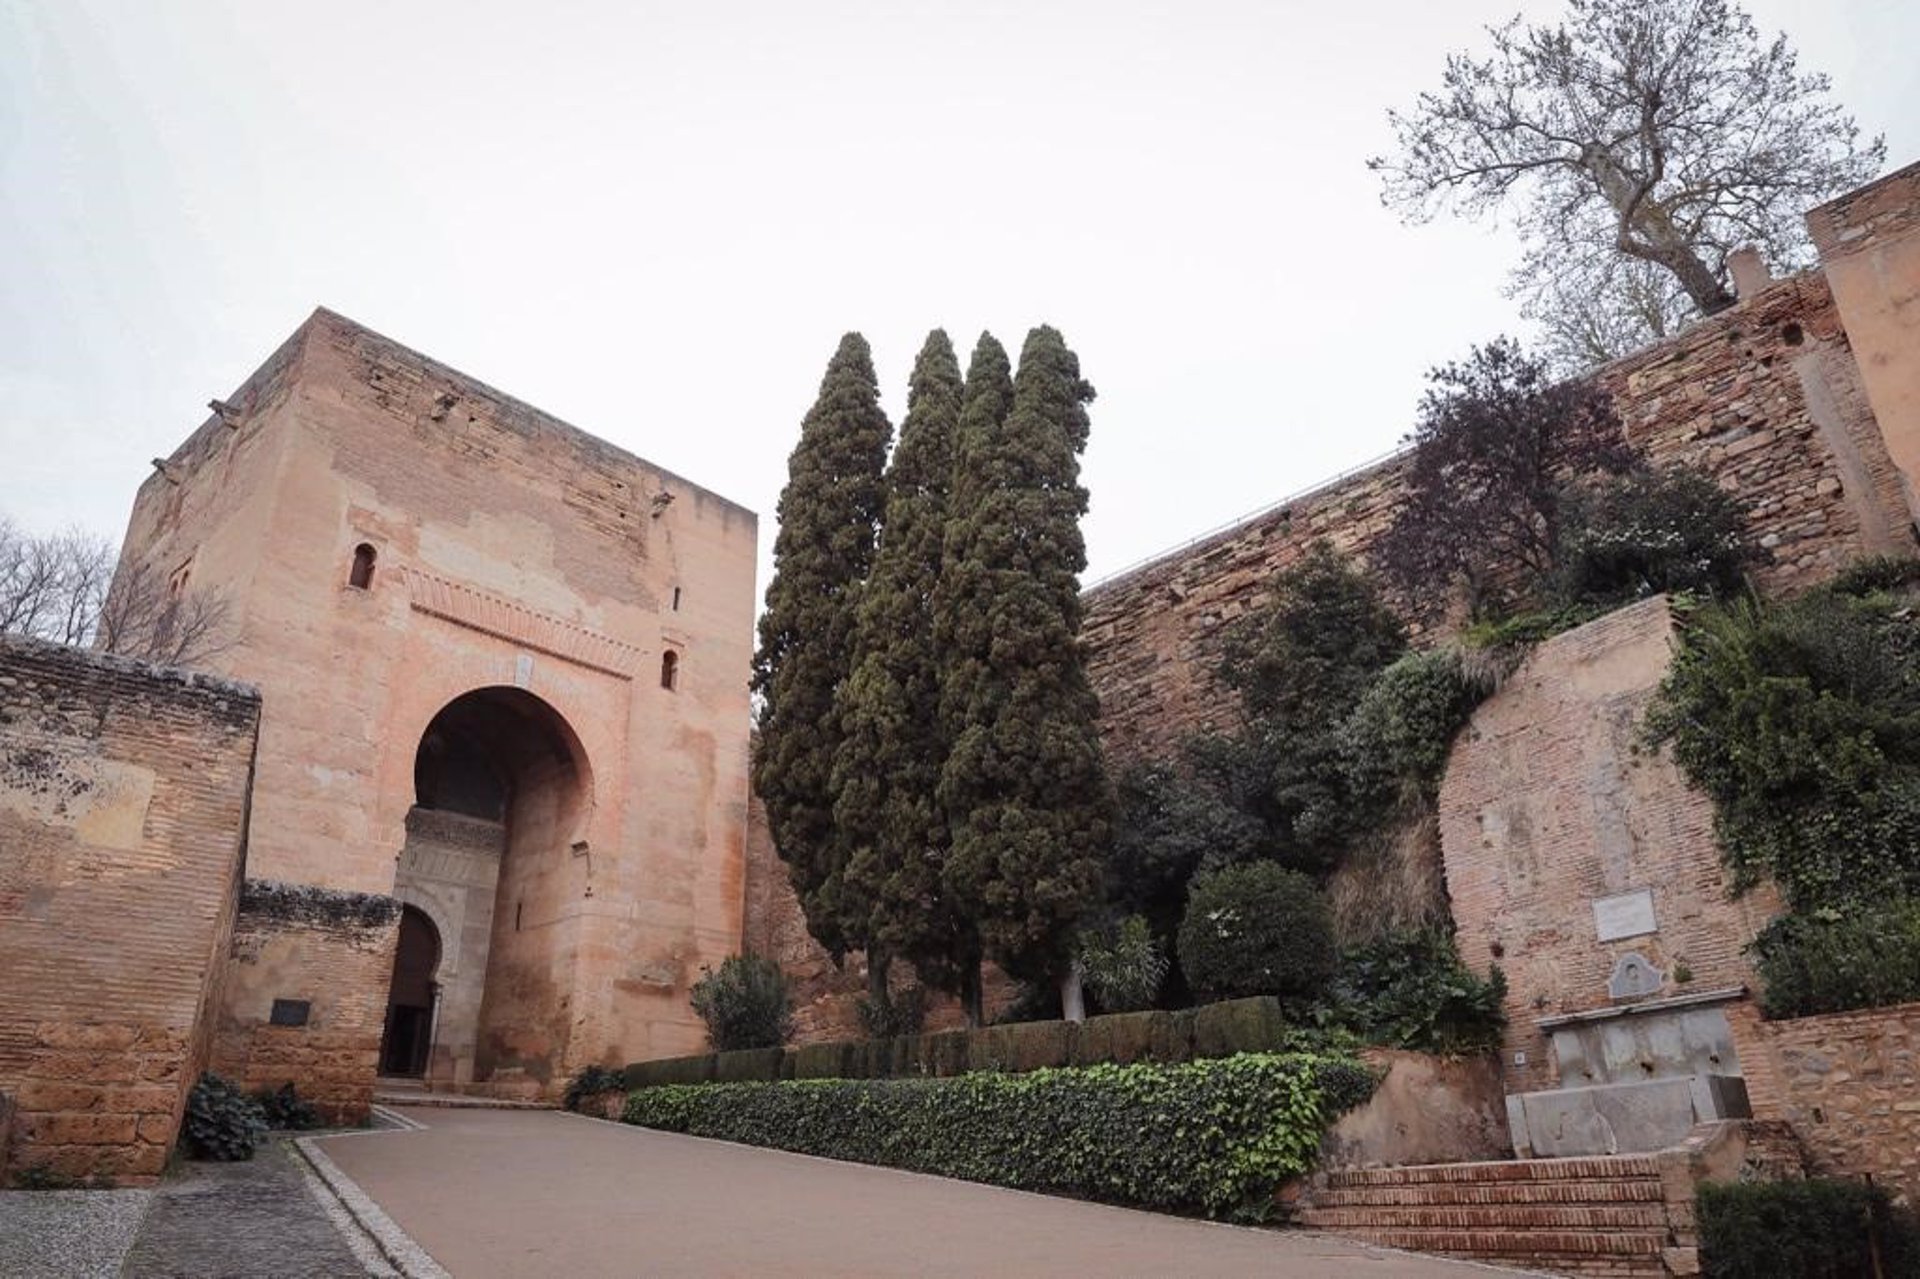 Licitada la obra para rehabilitar la muralla entre la Puerta de la Justicia y la Torre de Barba en la Alhambra